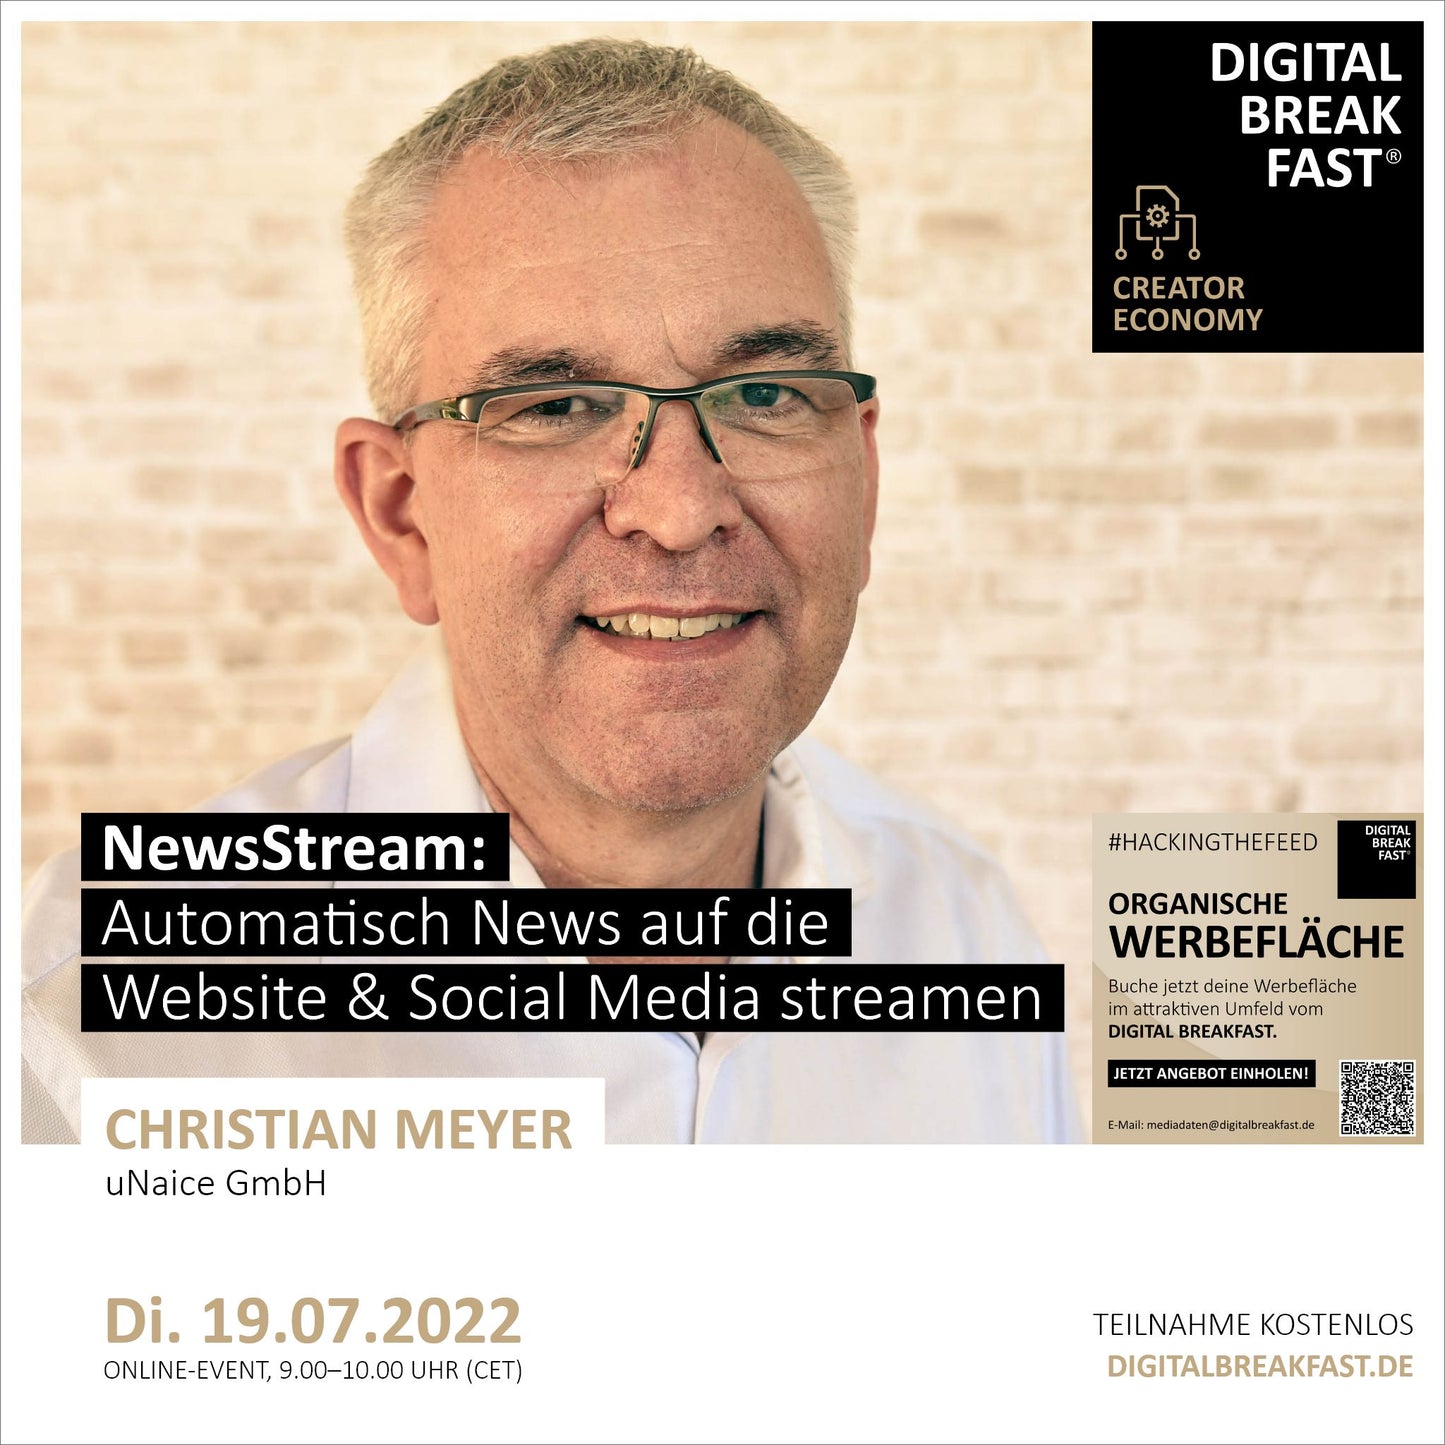 19.07.2022 | "NewsStream: Automatisch News auf die Website & Social Media streamen" | Christian Meyer | Unaice GmbH